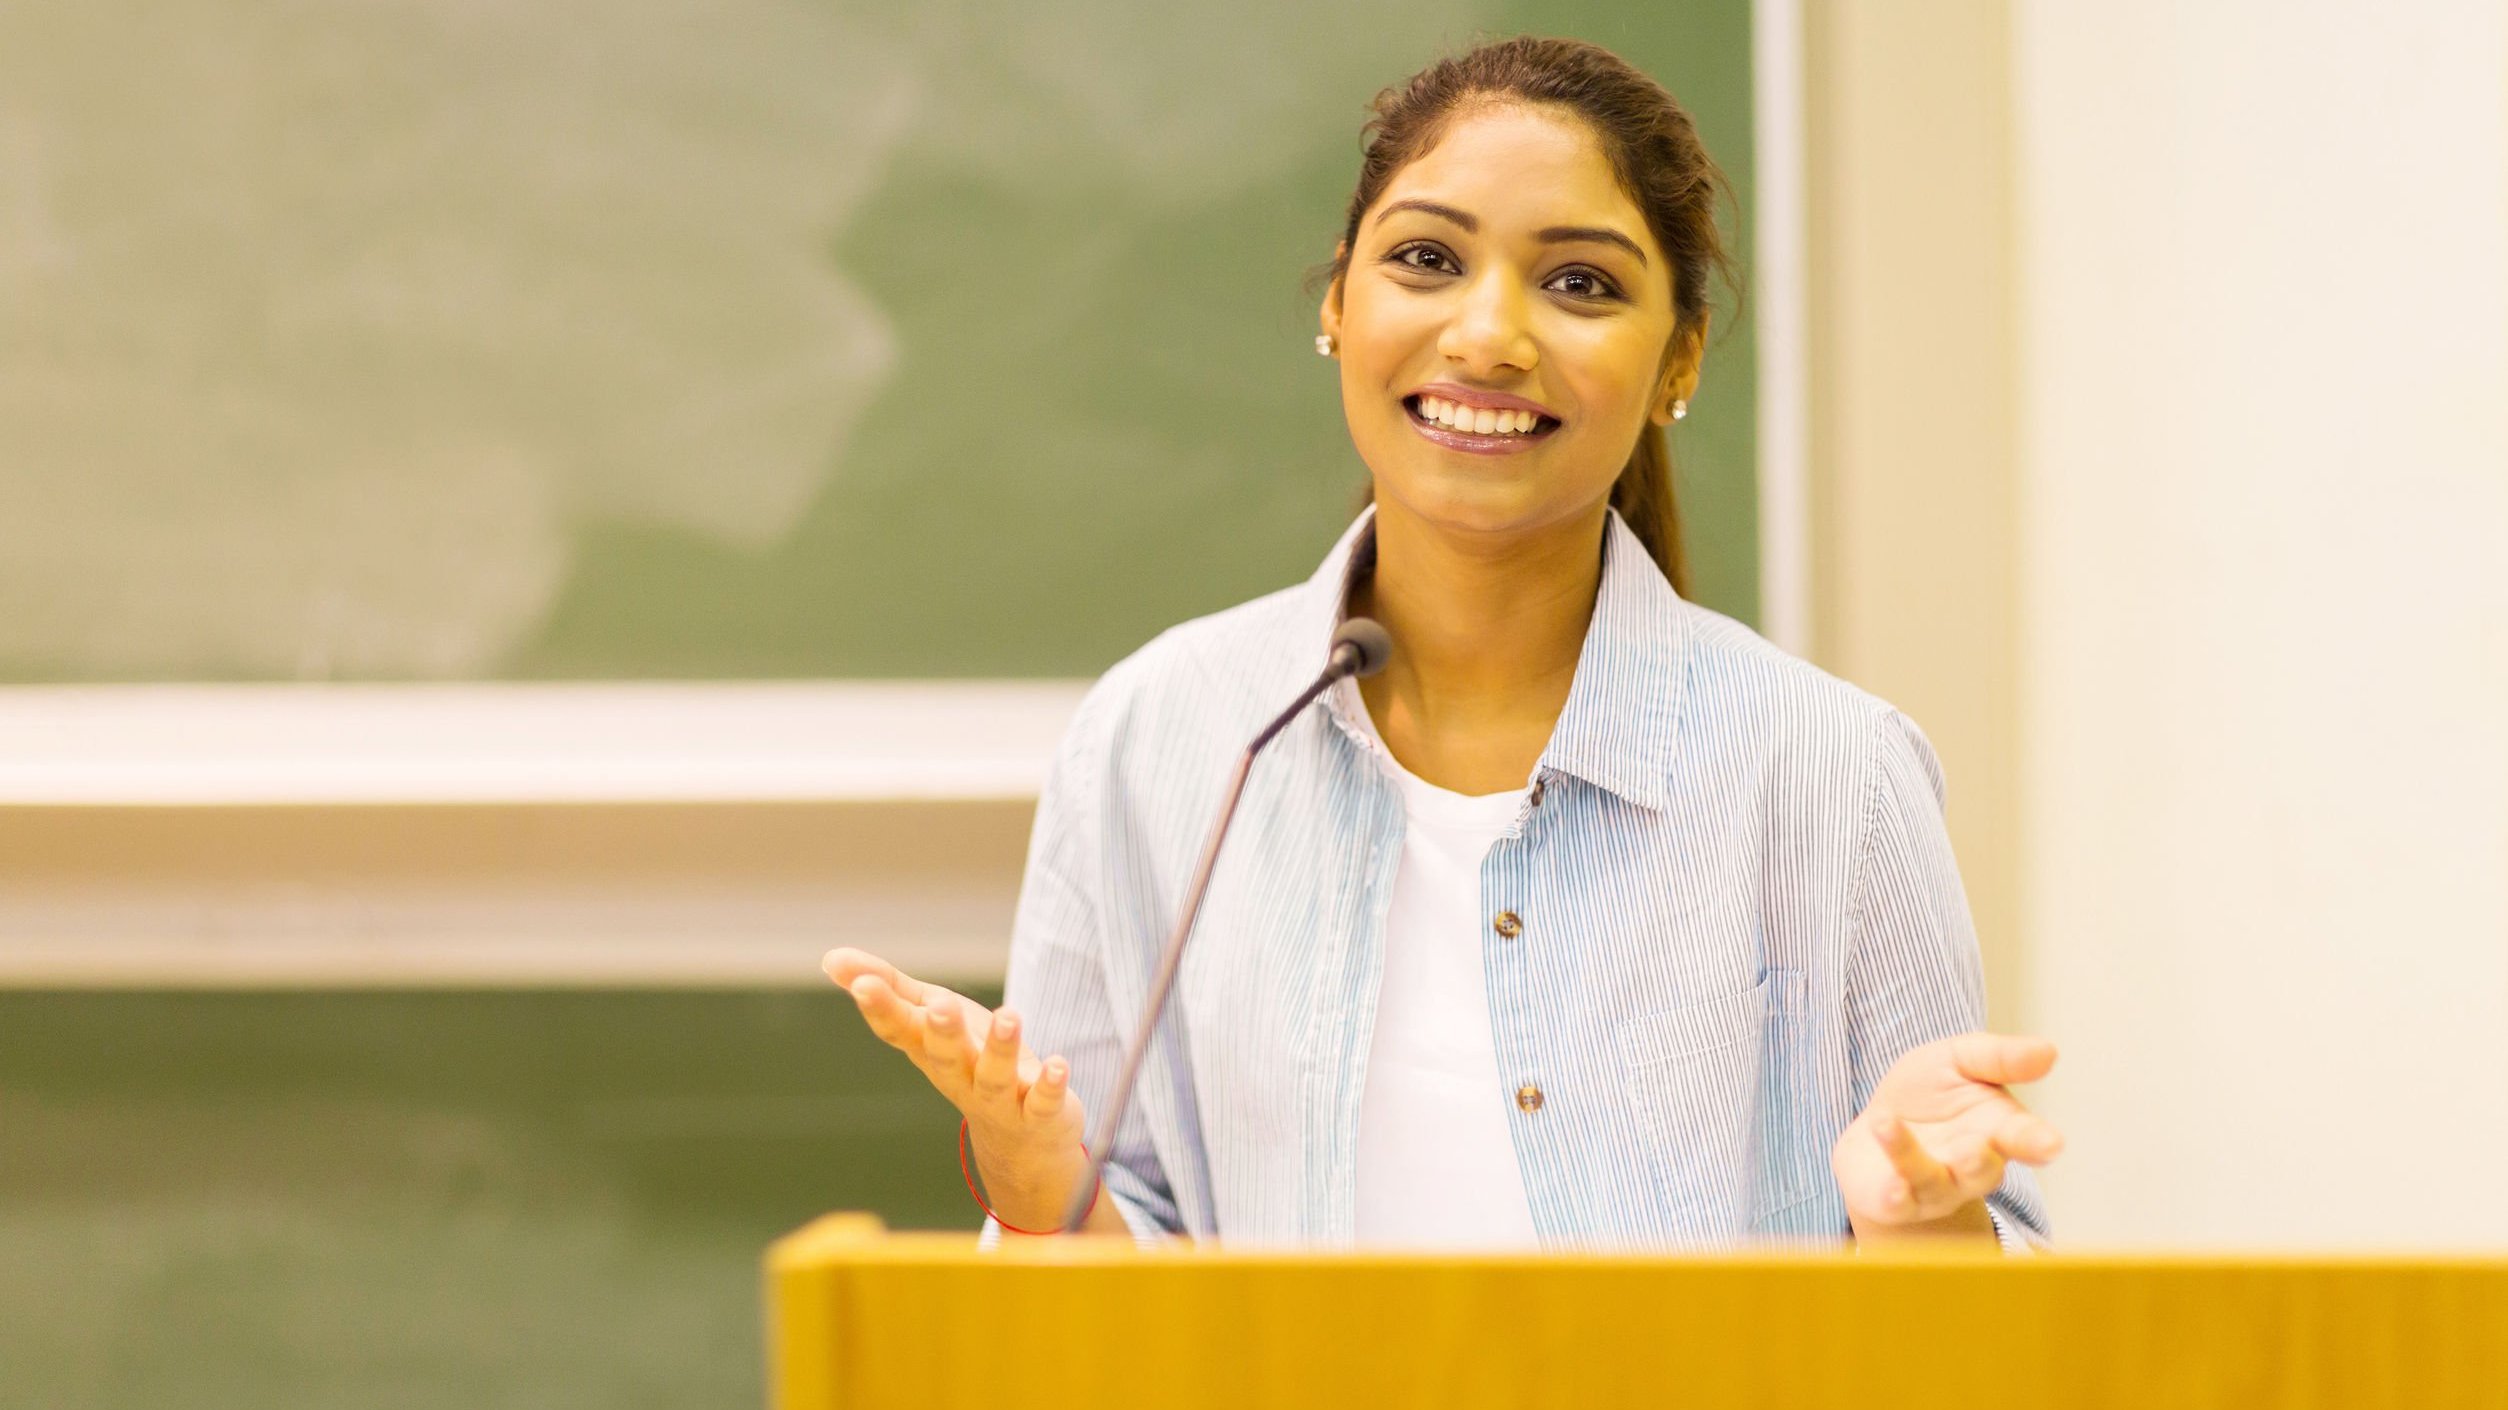 Mulher estudante discursando em sala de aula.